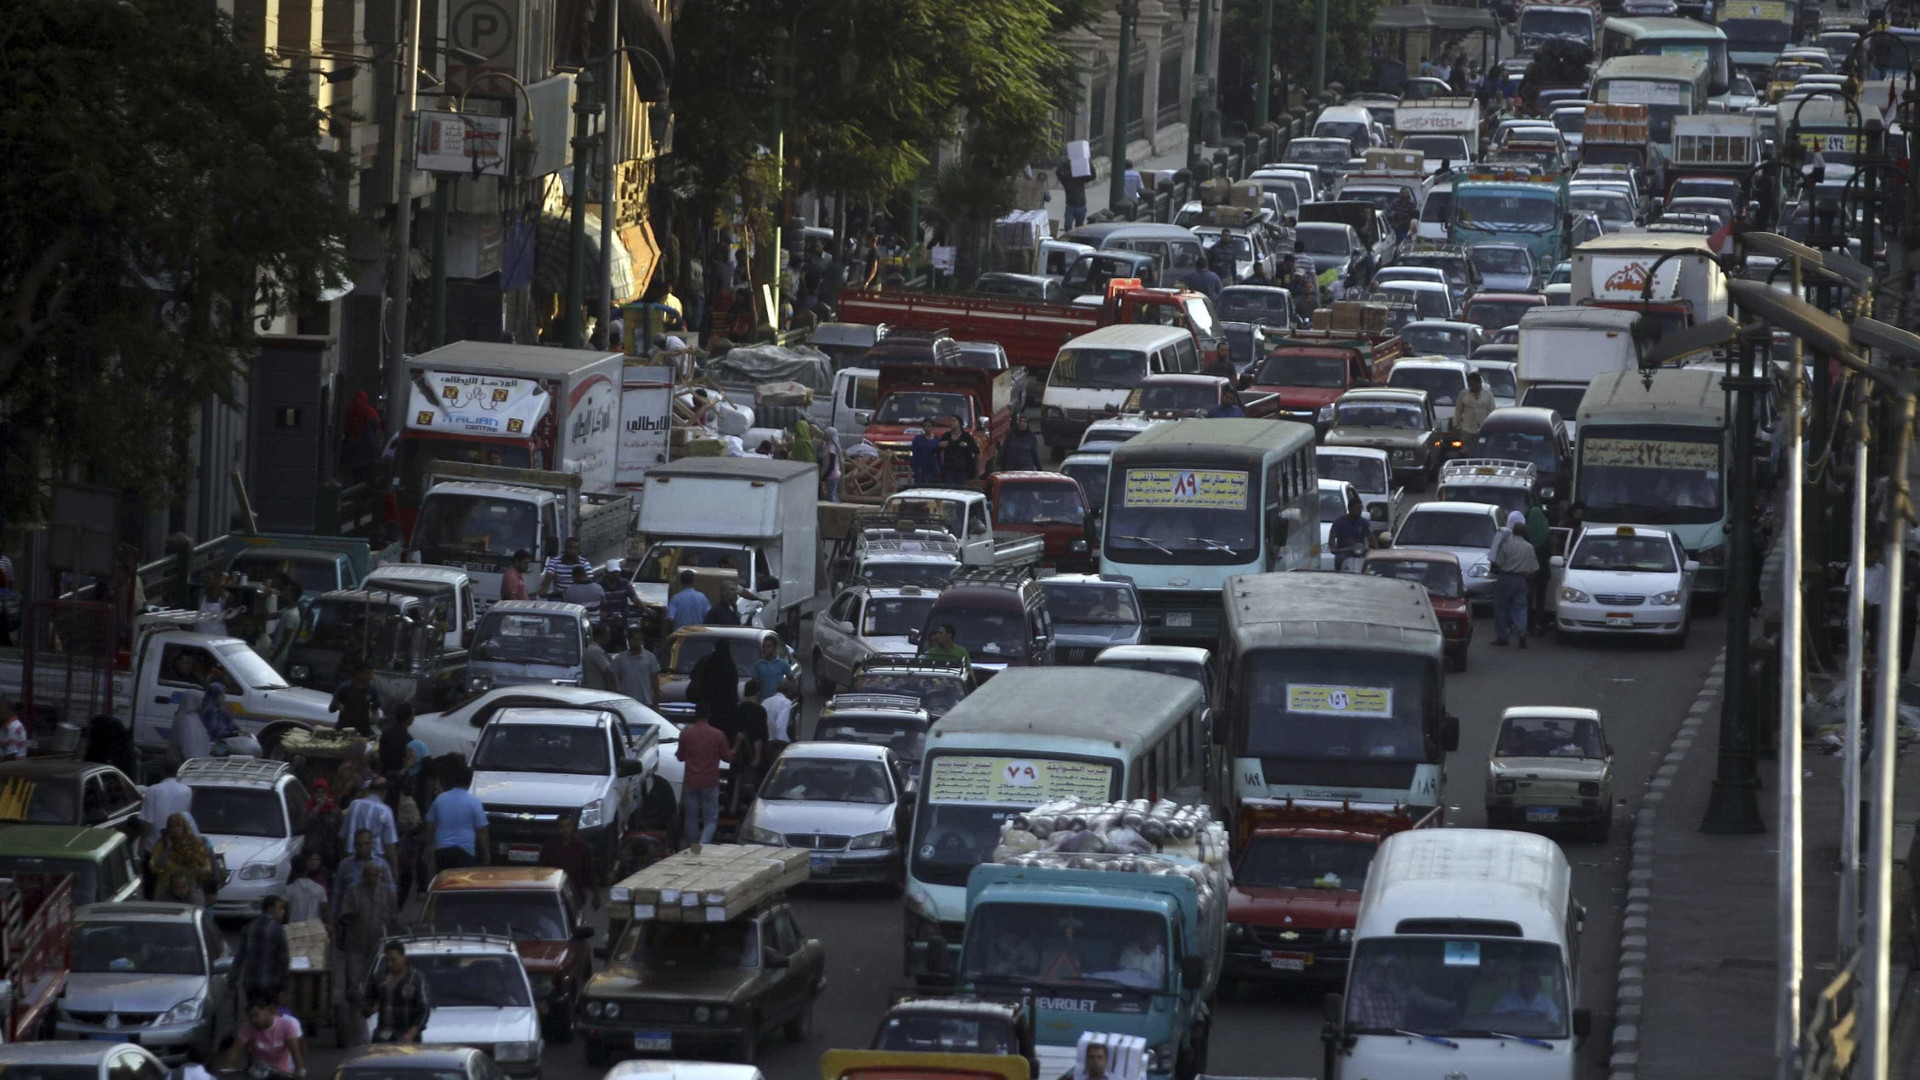 Poluição obriga uma cidade chinesa a limitar venda de carros